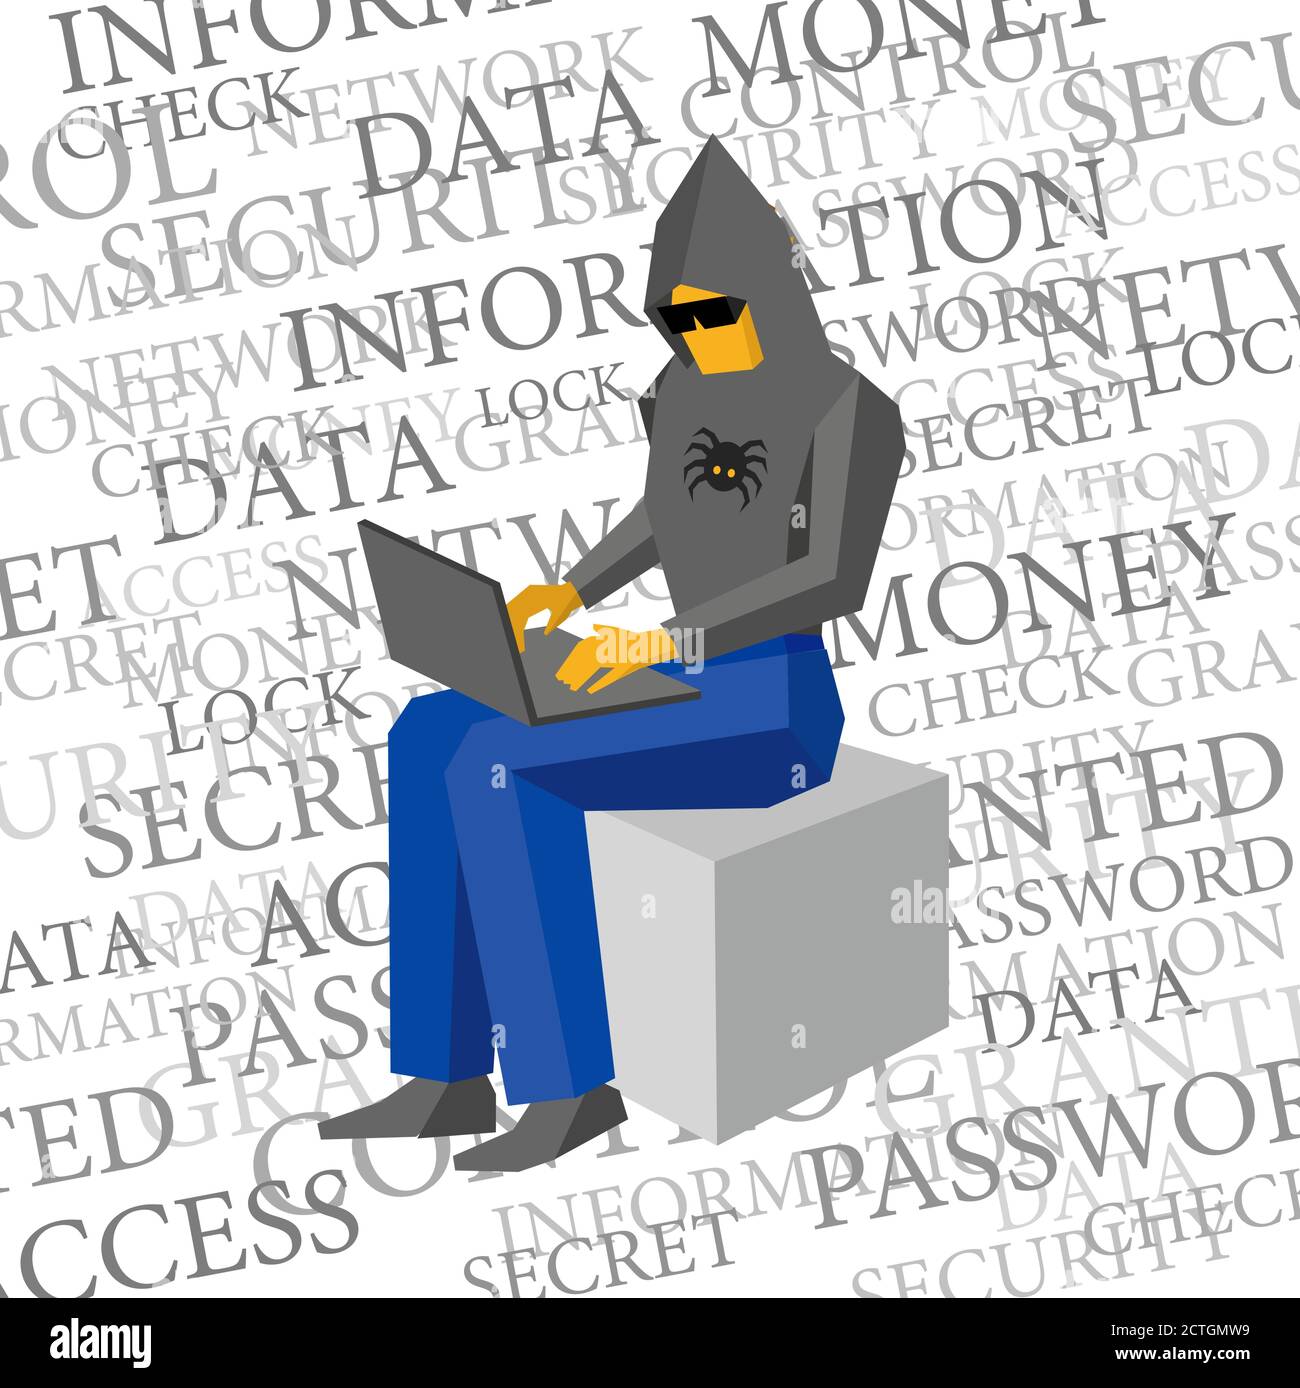 Computer hacker seduto con il portatile. Molte parole sulla sicurezza delle informazioni. Uomo con cappuccio nero e occhiali scuri che lavora con il computer. Cyber Illustrazione Vettoriale